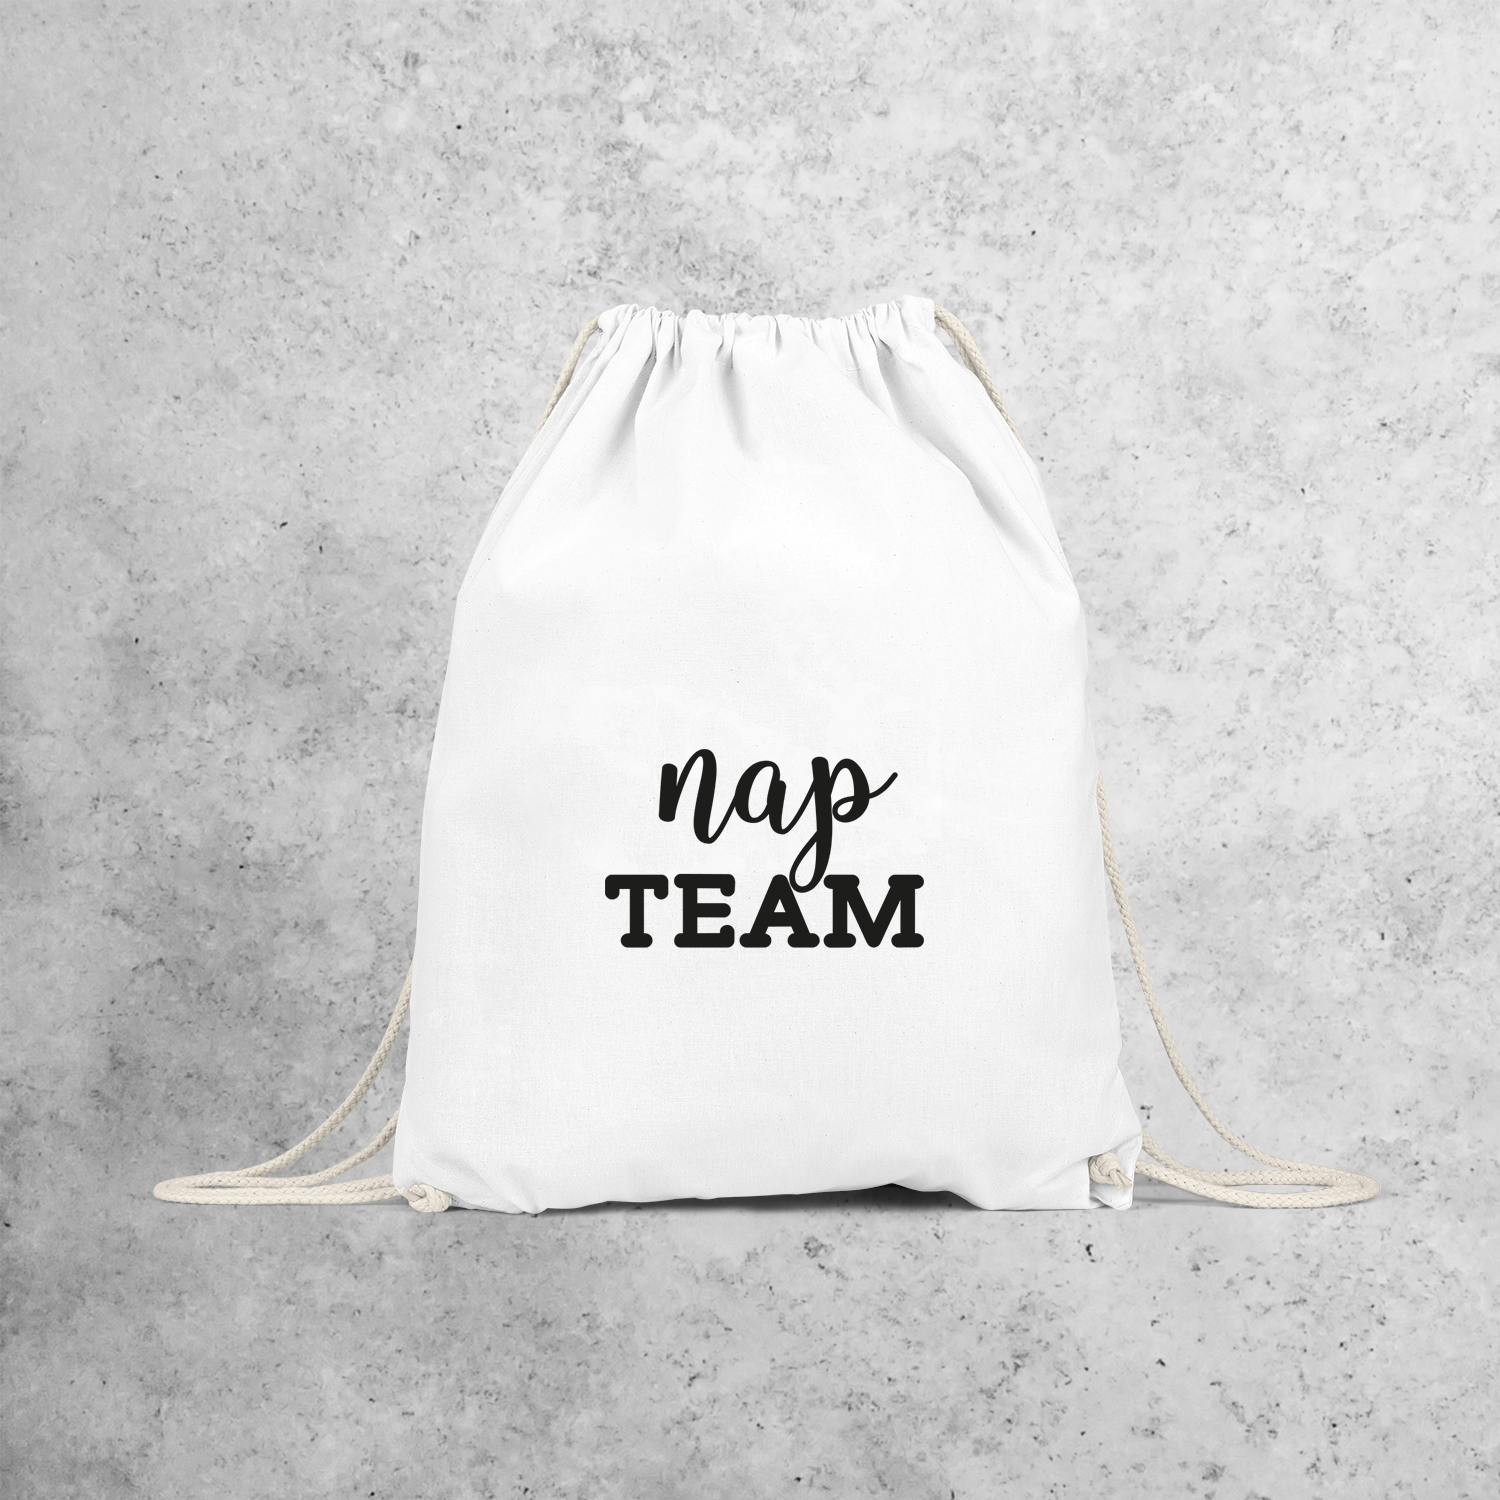 'Nap team' backpack